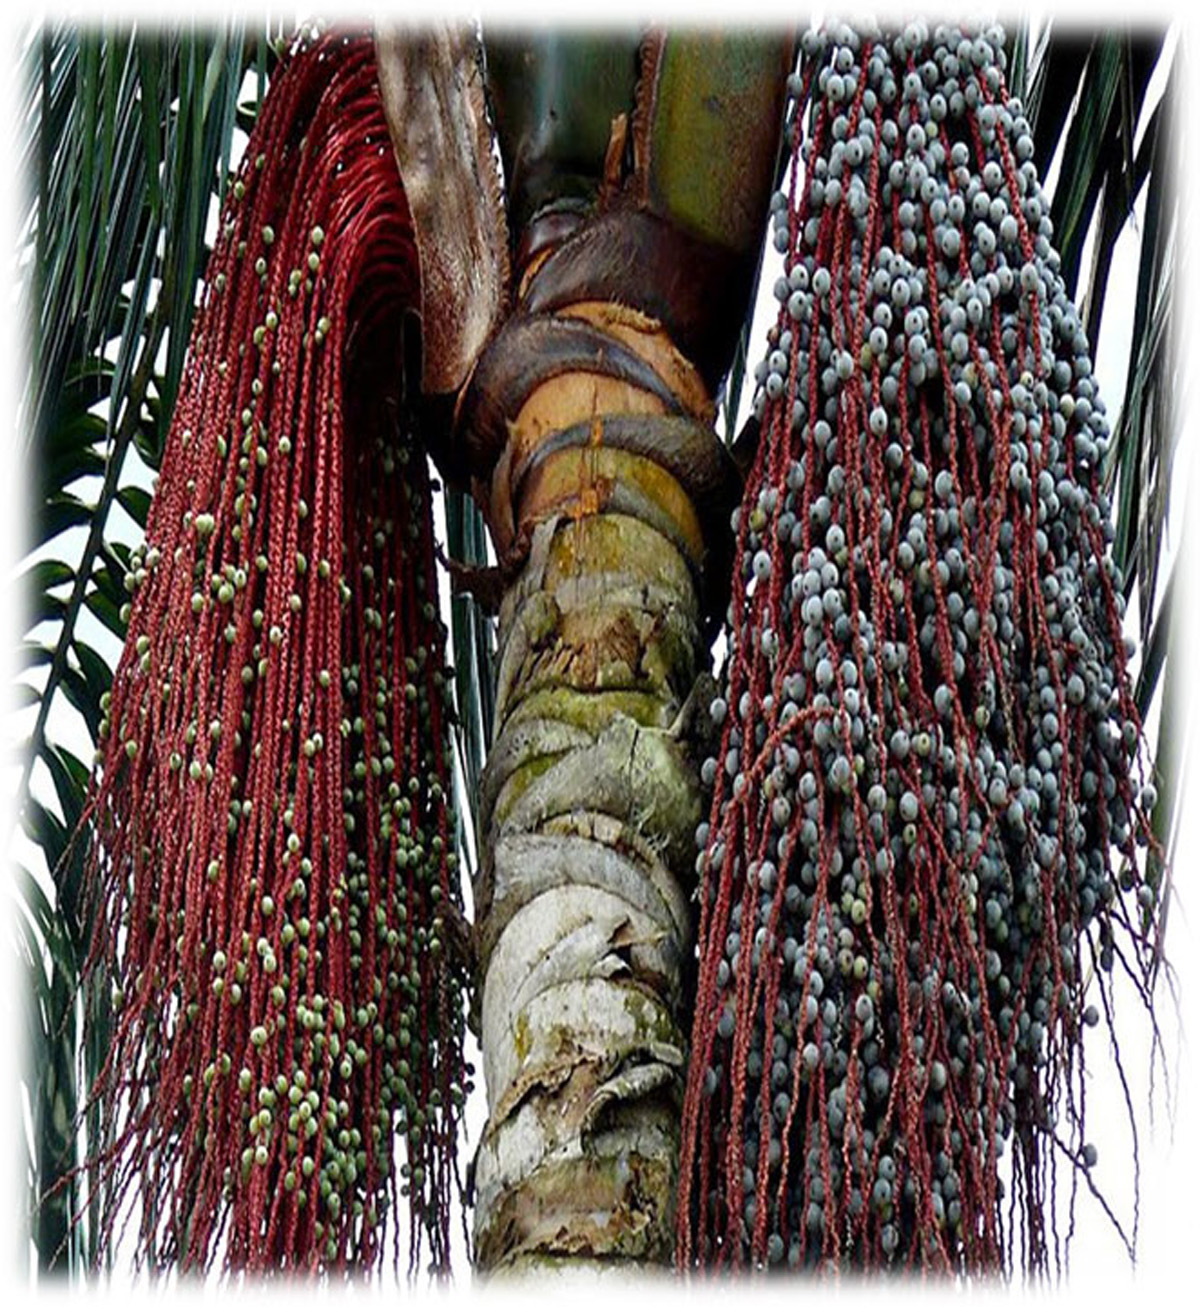 La palma de seje (Oenocarpus bataua) es de la región amazónica, pero también crece en zonas del Chocó, Boyacá y los Llanos Orientales.